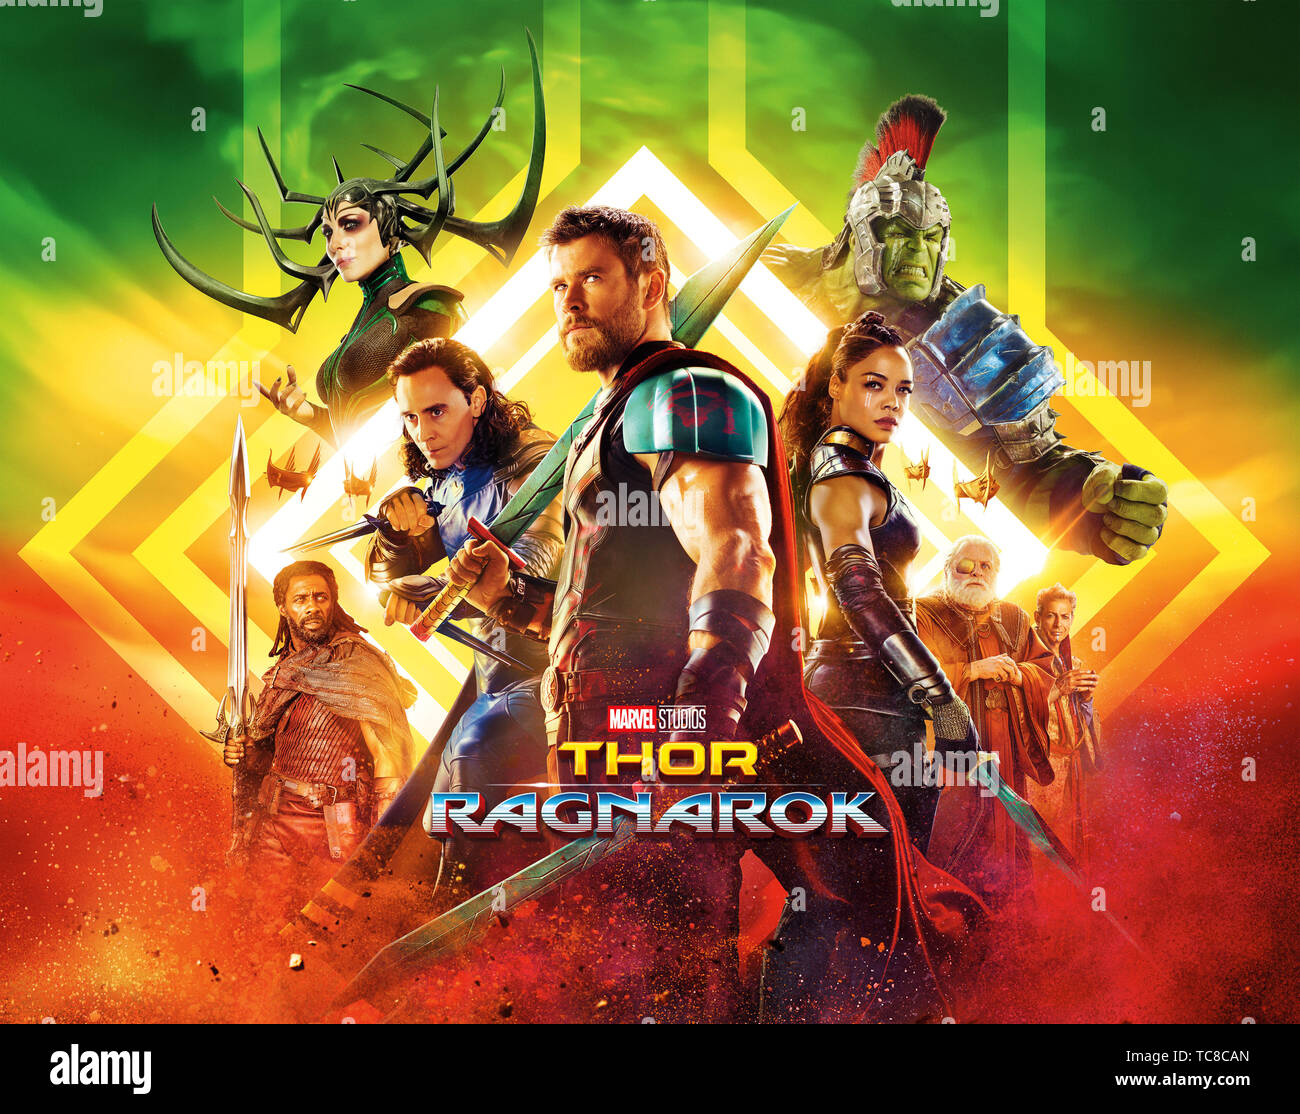 Papel Pop - Thor: Ragnarok estreia no fim de outubro. Mas qual o melhor  momento do herói? • Thor (2011) • Thor: O Mundo Sombrio (2013) •  Vingadores: Era de Ultron (2015) • Thor: Ragnarok (2017)